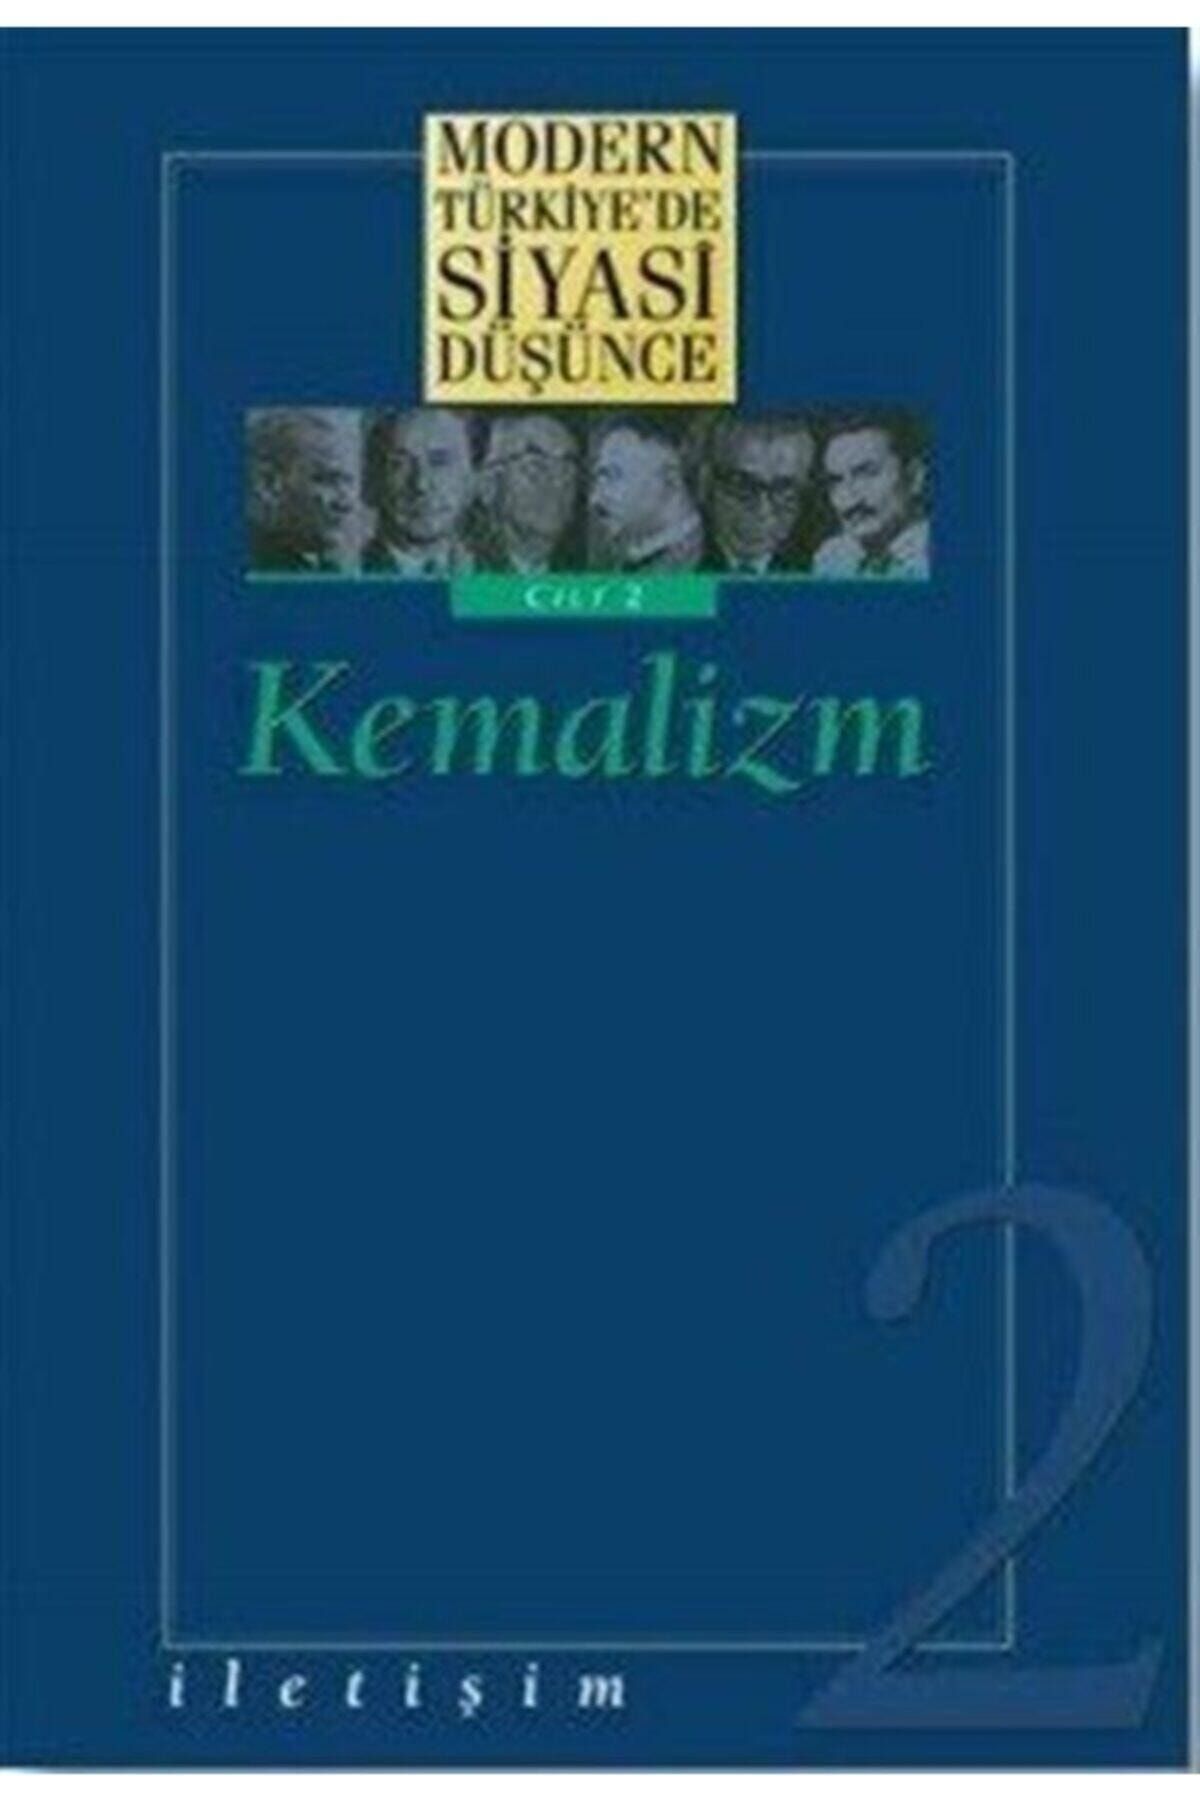 İletişim Yayınları Modern Türkiye'de Siyasi Düşünce Cilt 2 - Kemalizm (ciltli) - - Kollektif Kitabı